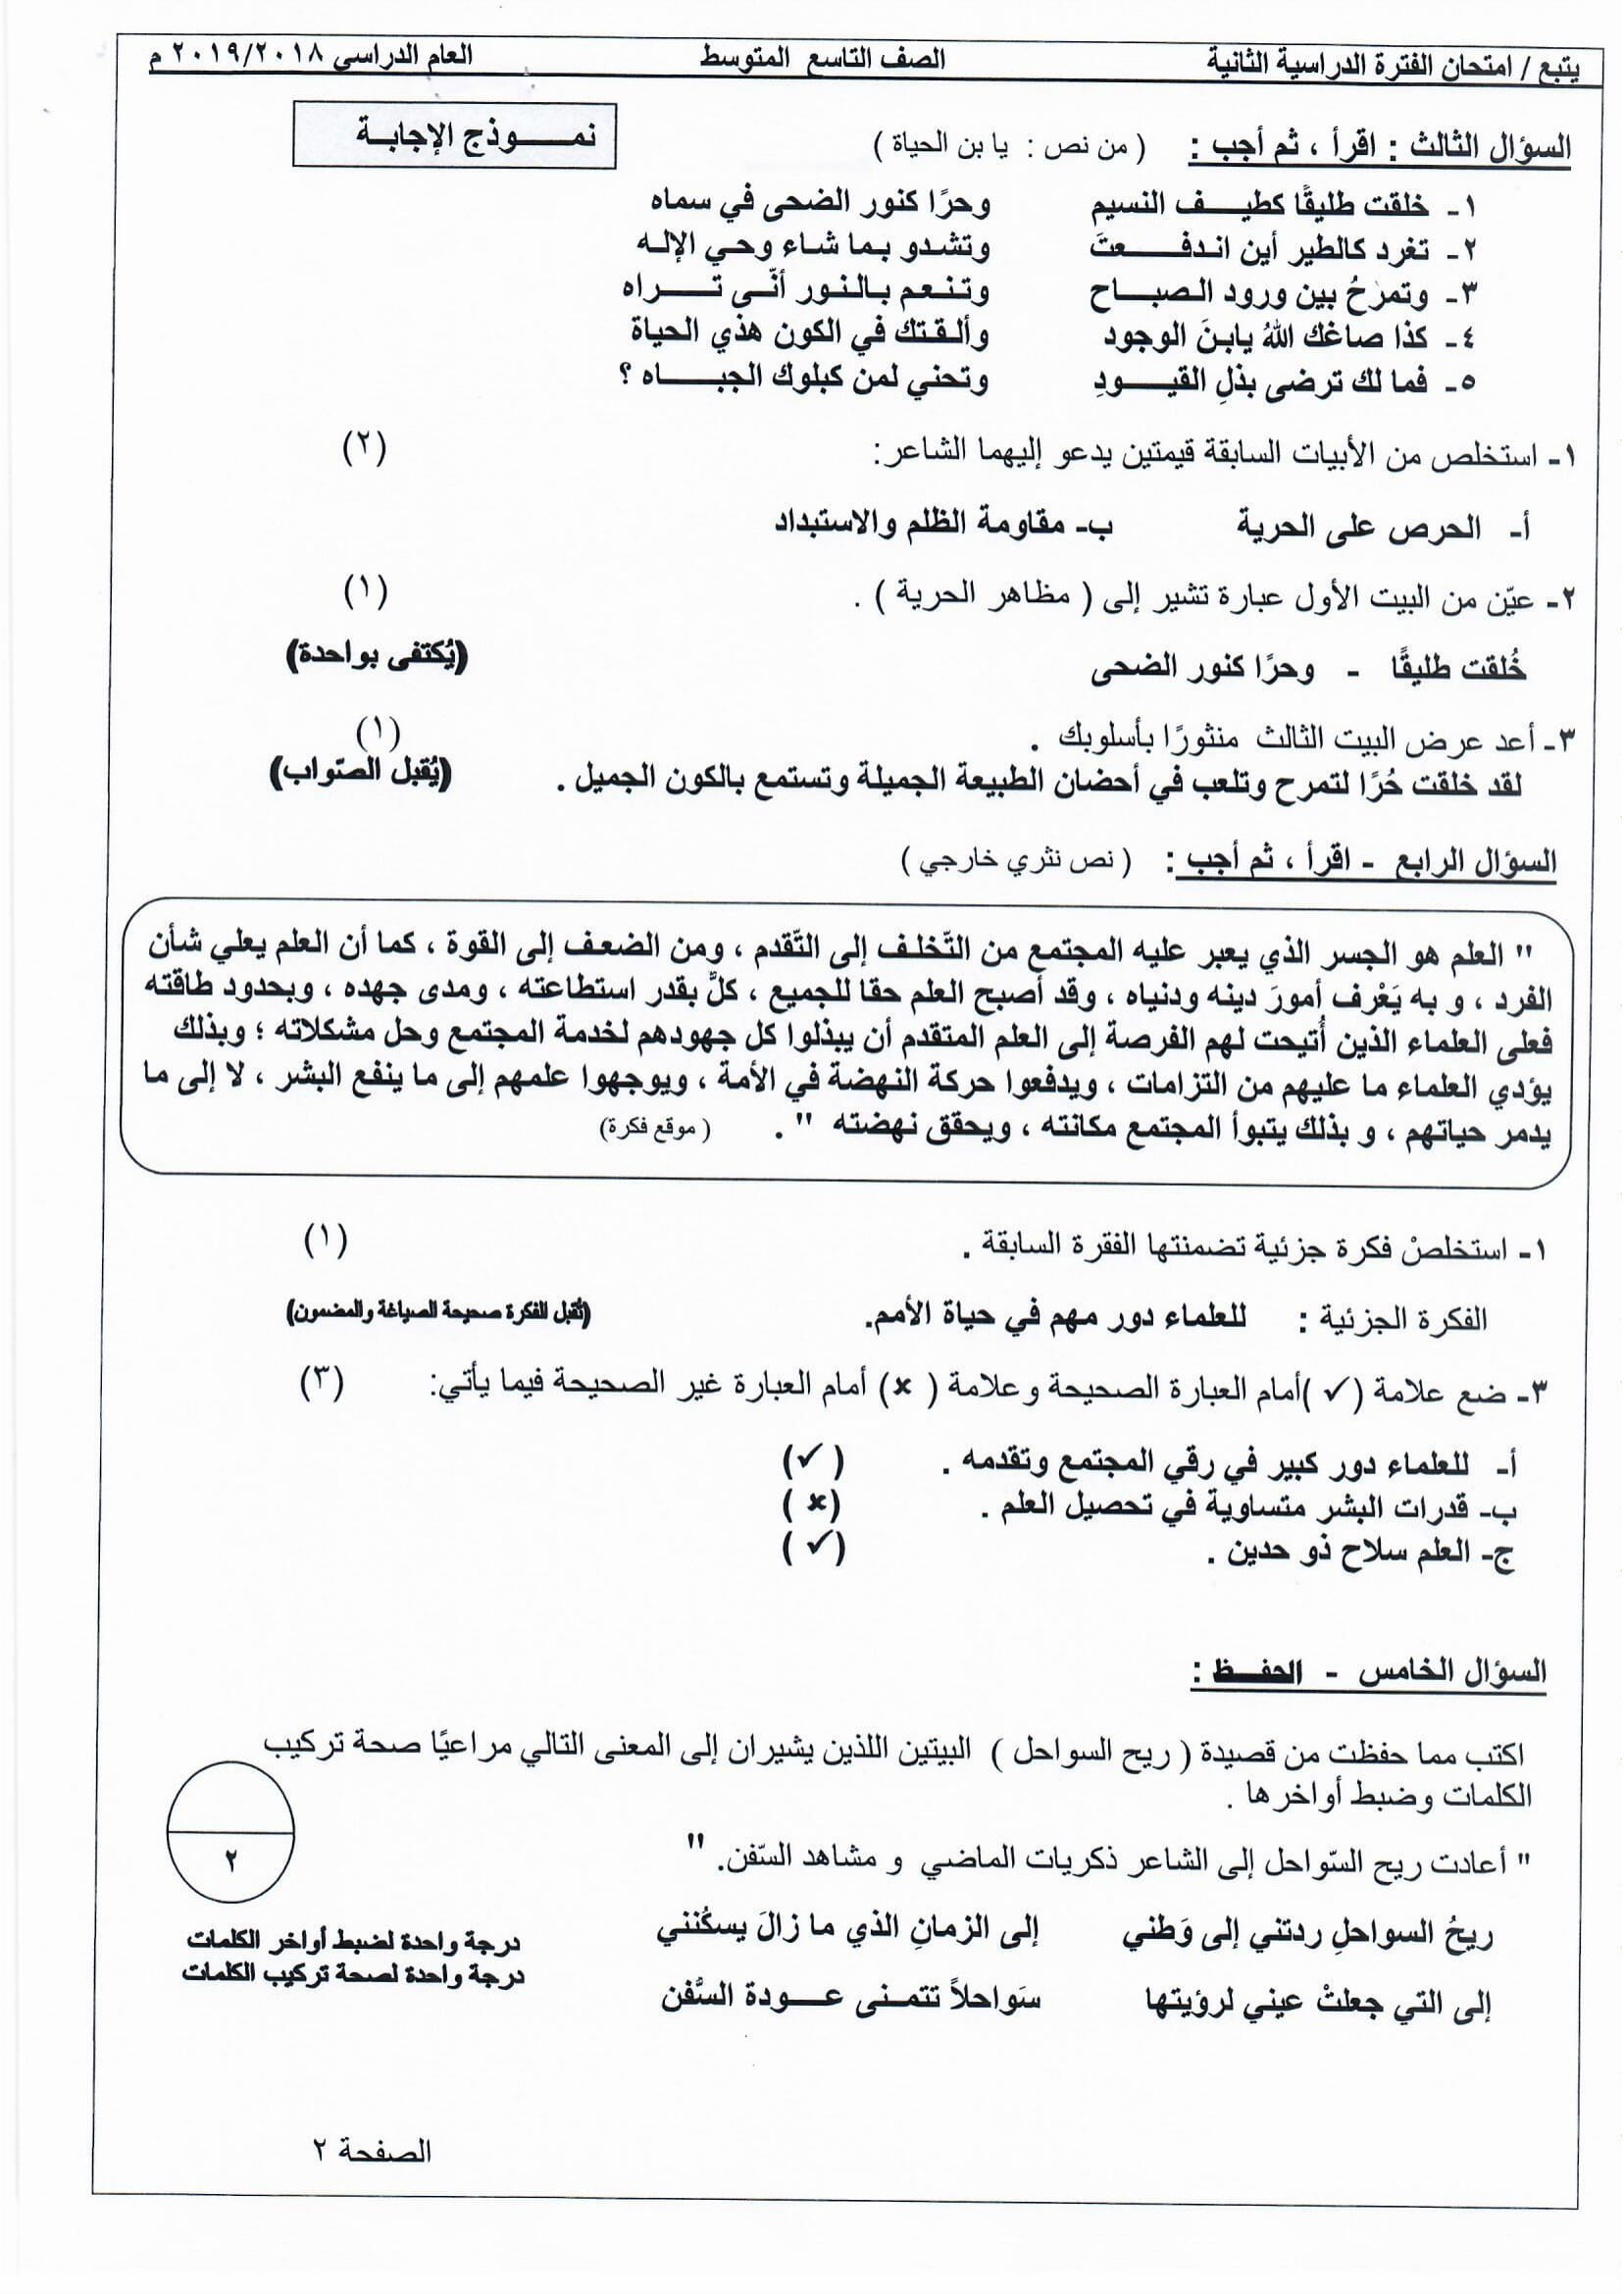 نموذج اجابة اختبار عربي الصف التاسع الفصل الثاني